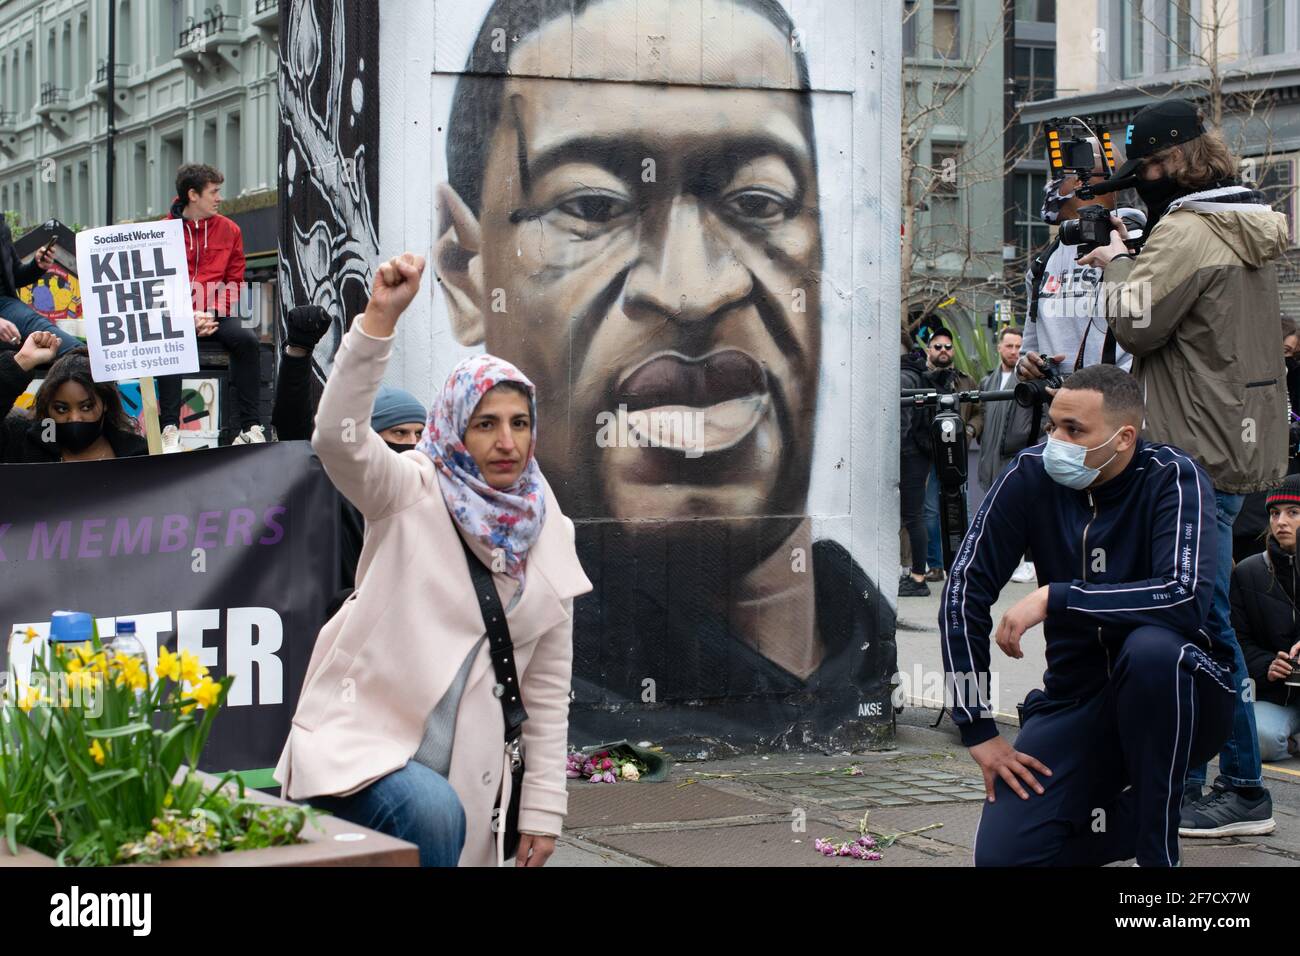 Matar a la protesta de Bill Manchester, Reino Unido durante el cierre nacional en Inglaterra. Demostrador frente a un arte callejero de George Floyd en el Barrio Norte Foto de stock